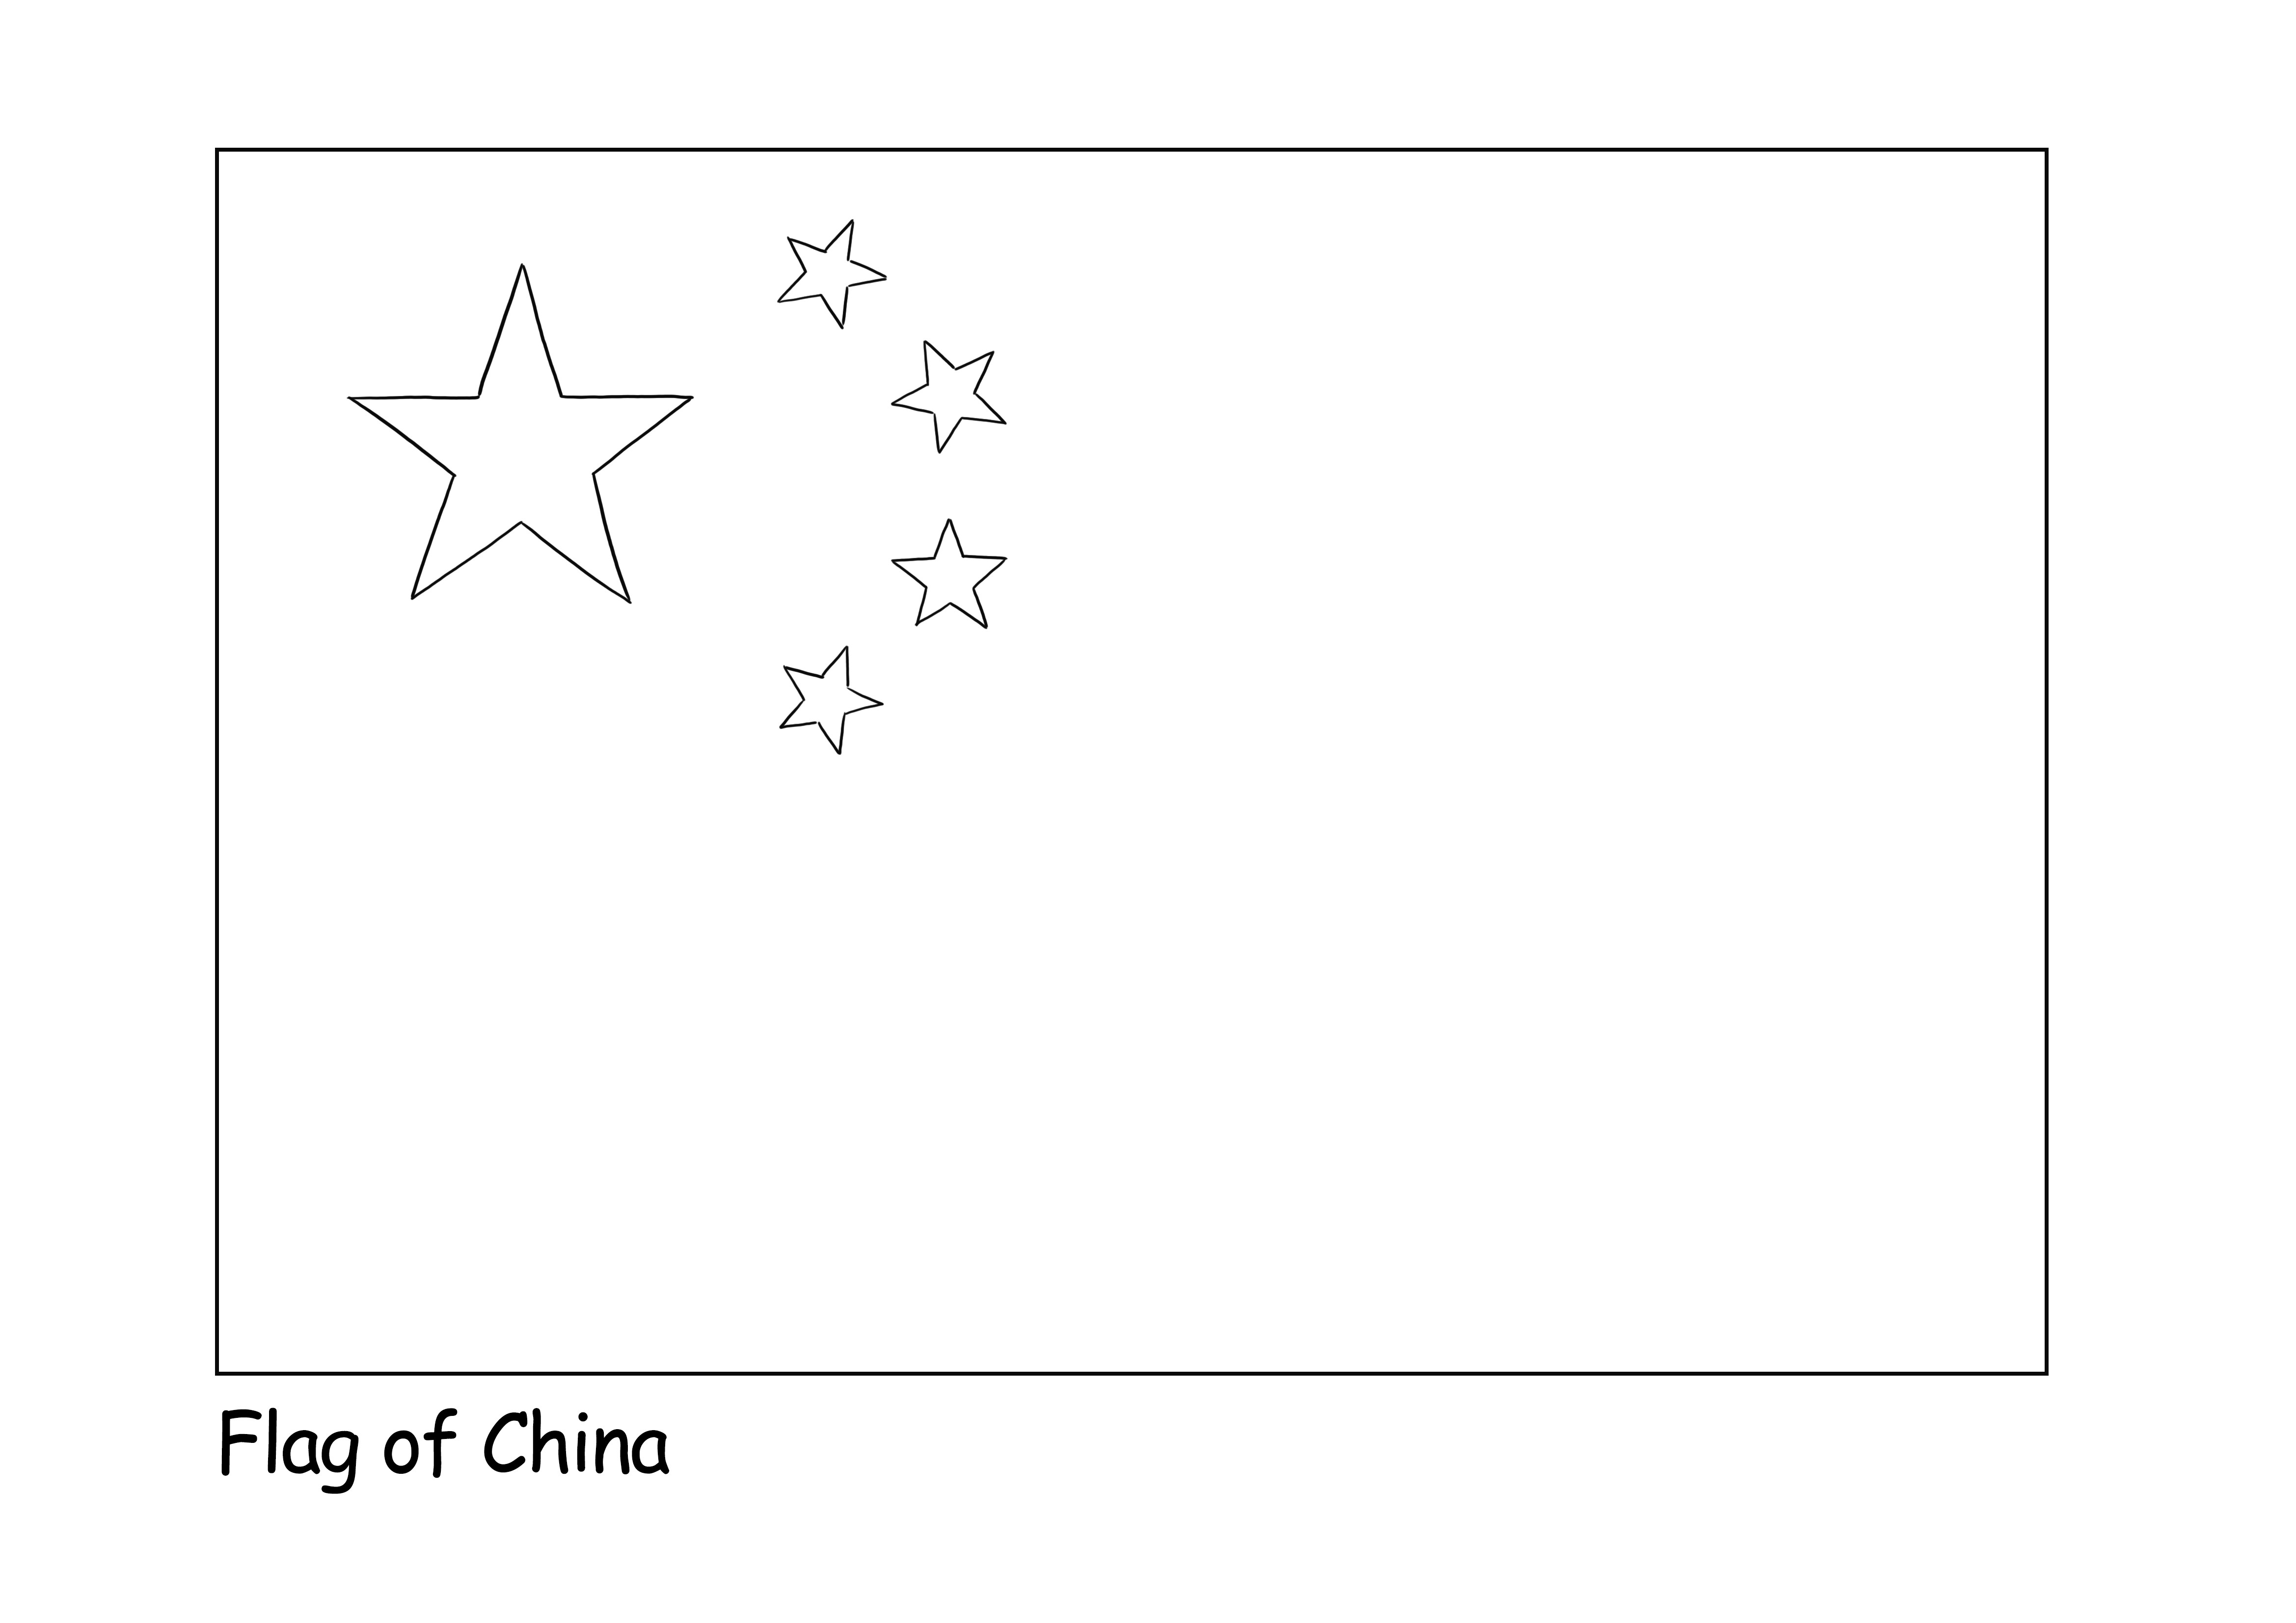 Ilmainen väritysarkki Kiinan lippu lapsille oppiakseen eri maiden lipuista